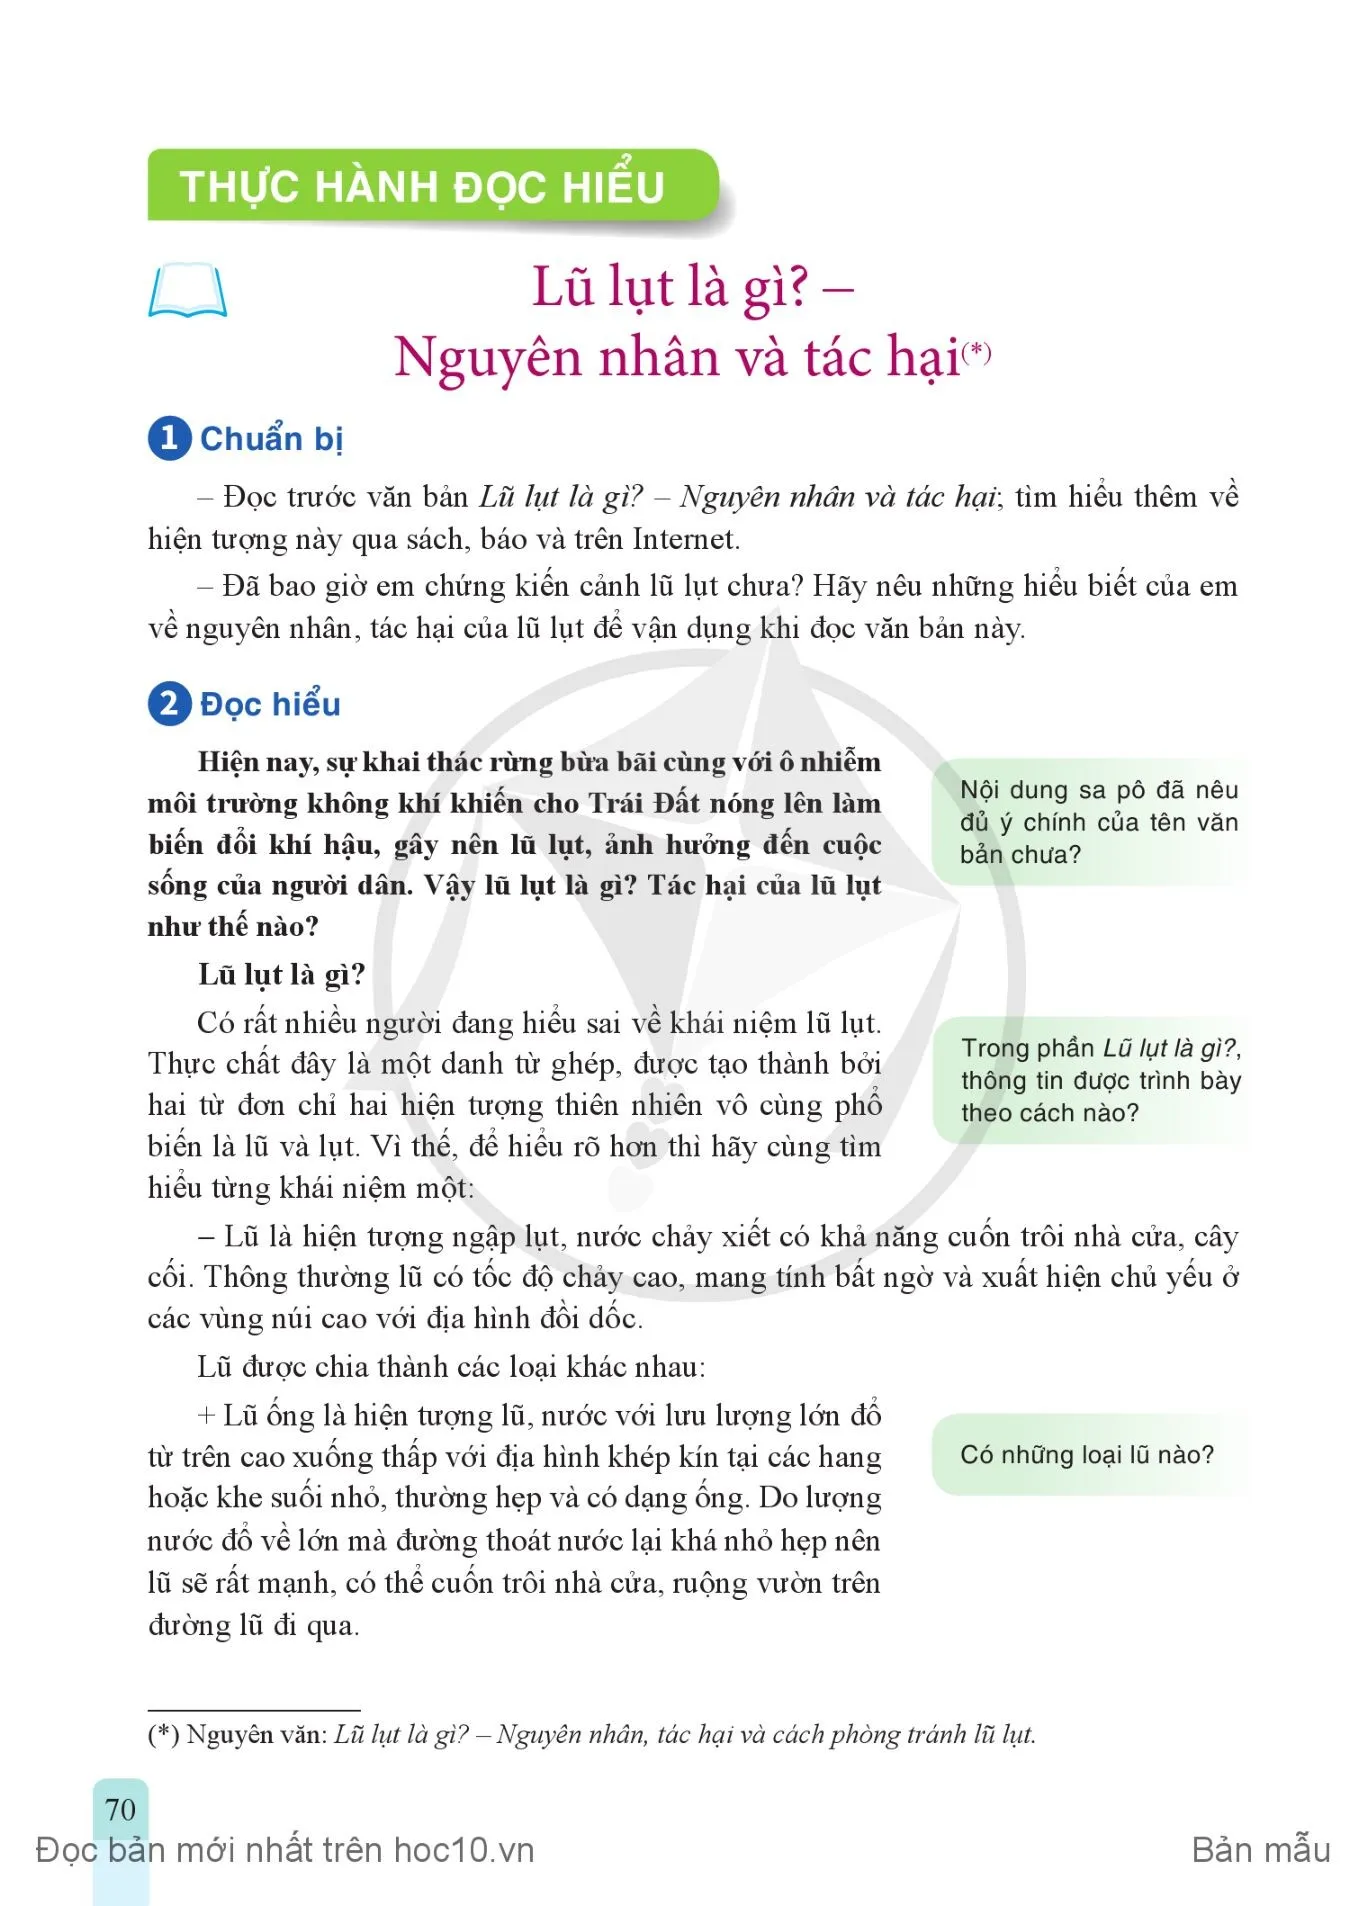 • Thực hành tiếng Việt: Các đoạn văn diễn dịch, quy nạp, song song, phối hợp